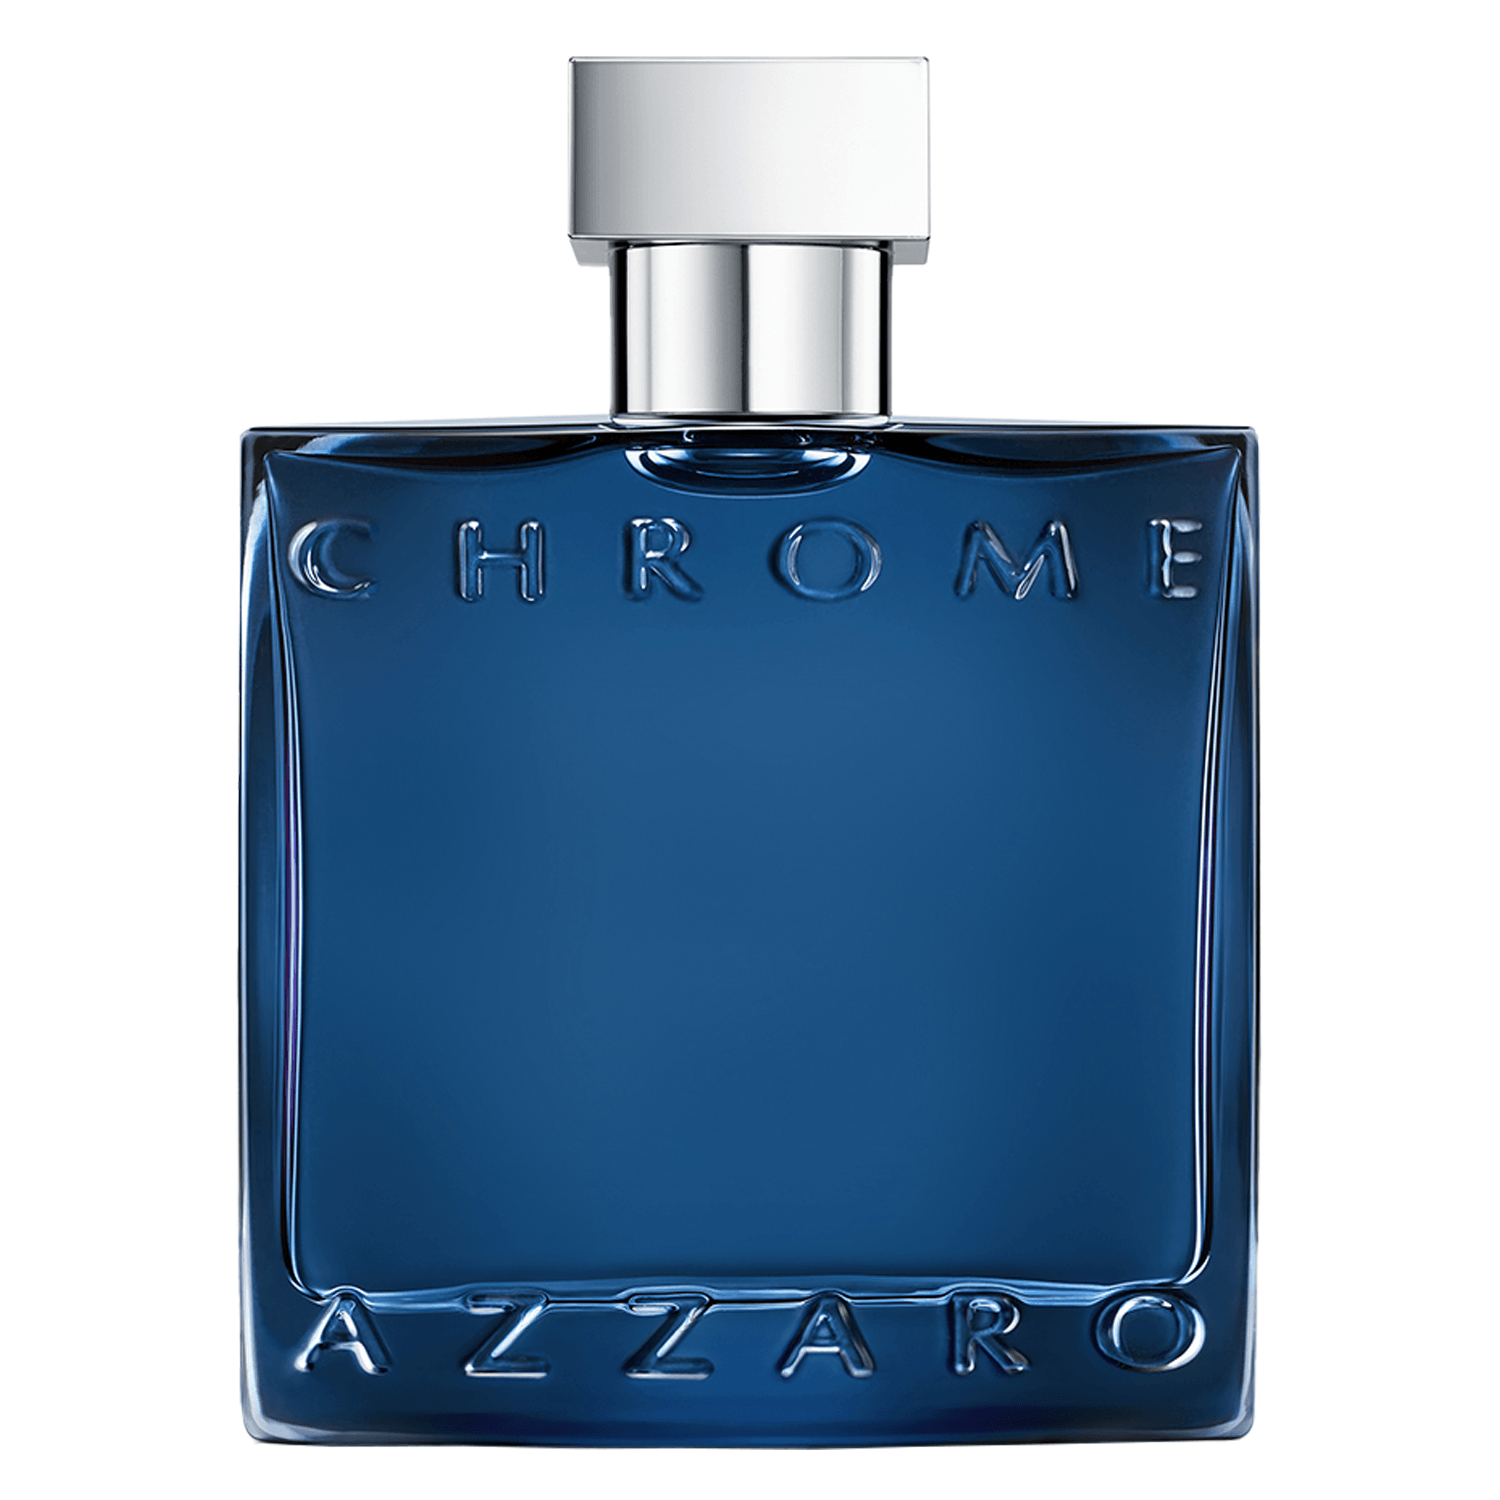 Produktbild von Azzaro Chrome - Parfum